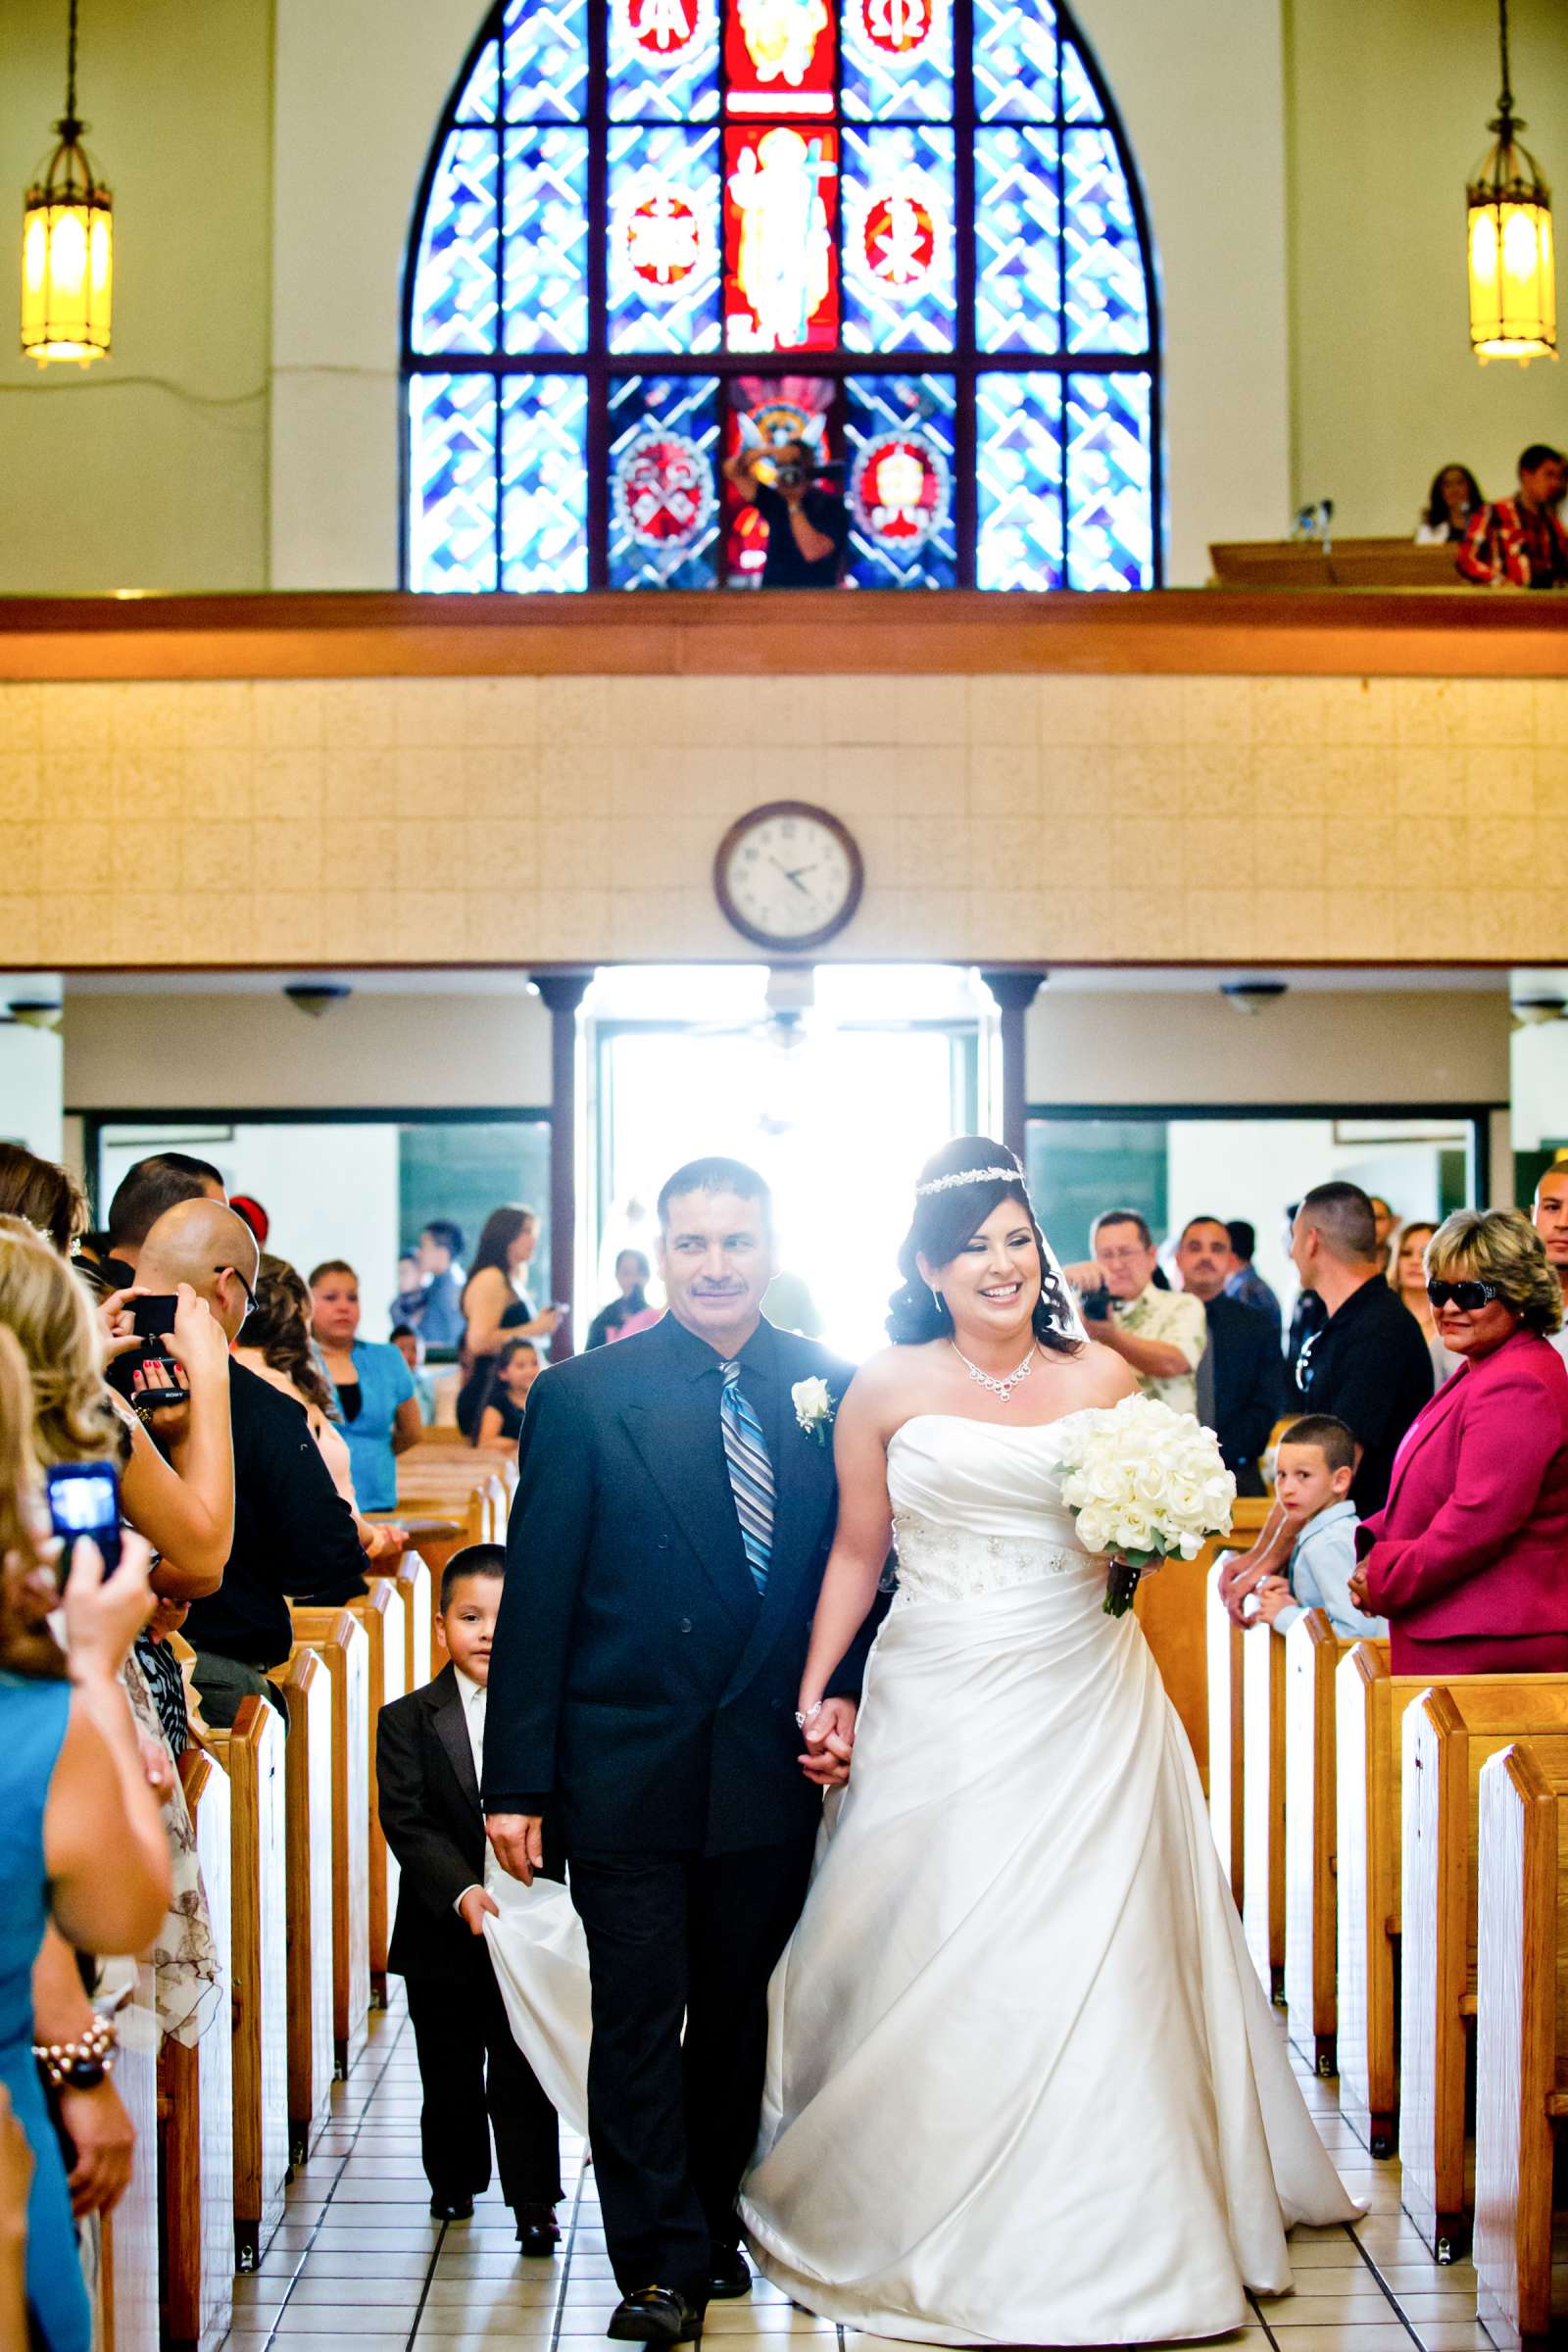 Holy Trinity Parish Hall Wedding, Elizabeth and Angel Wedding Photo #321872 by True Photography